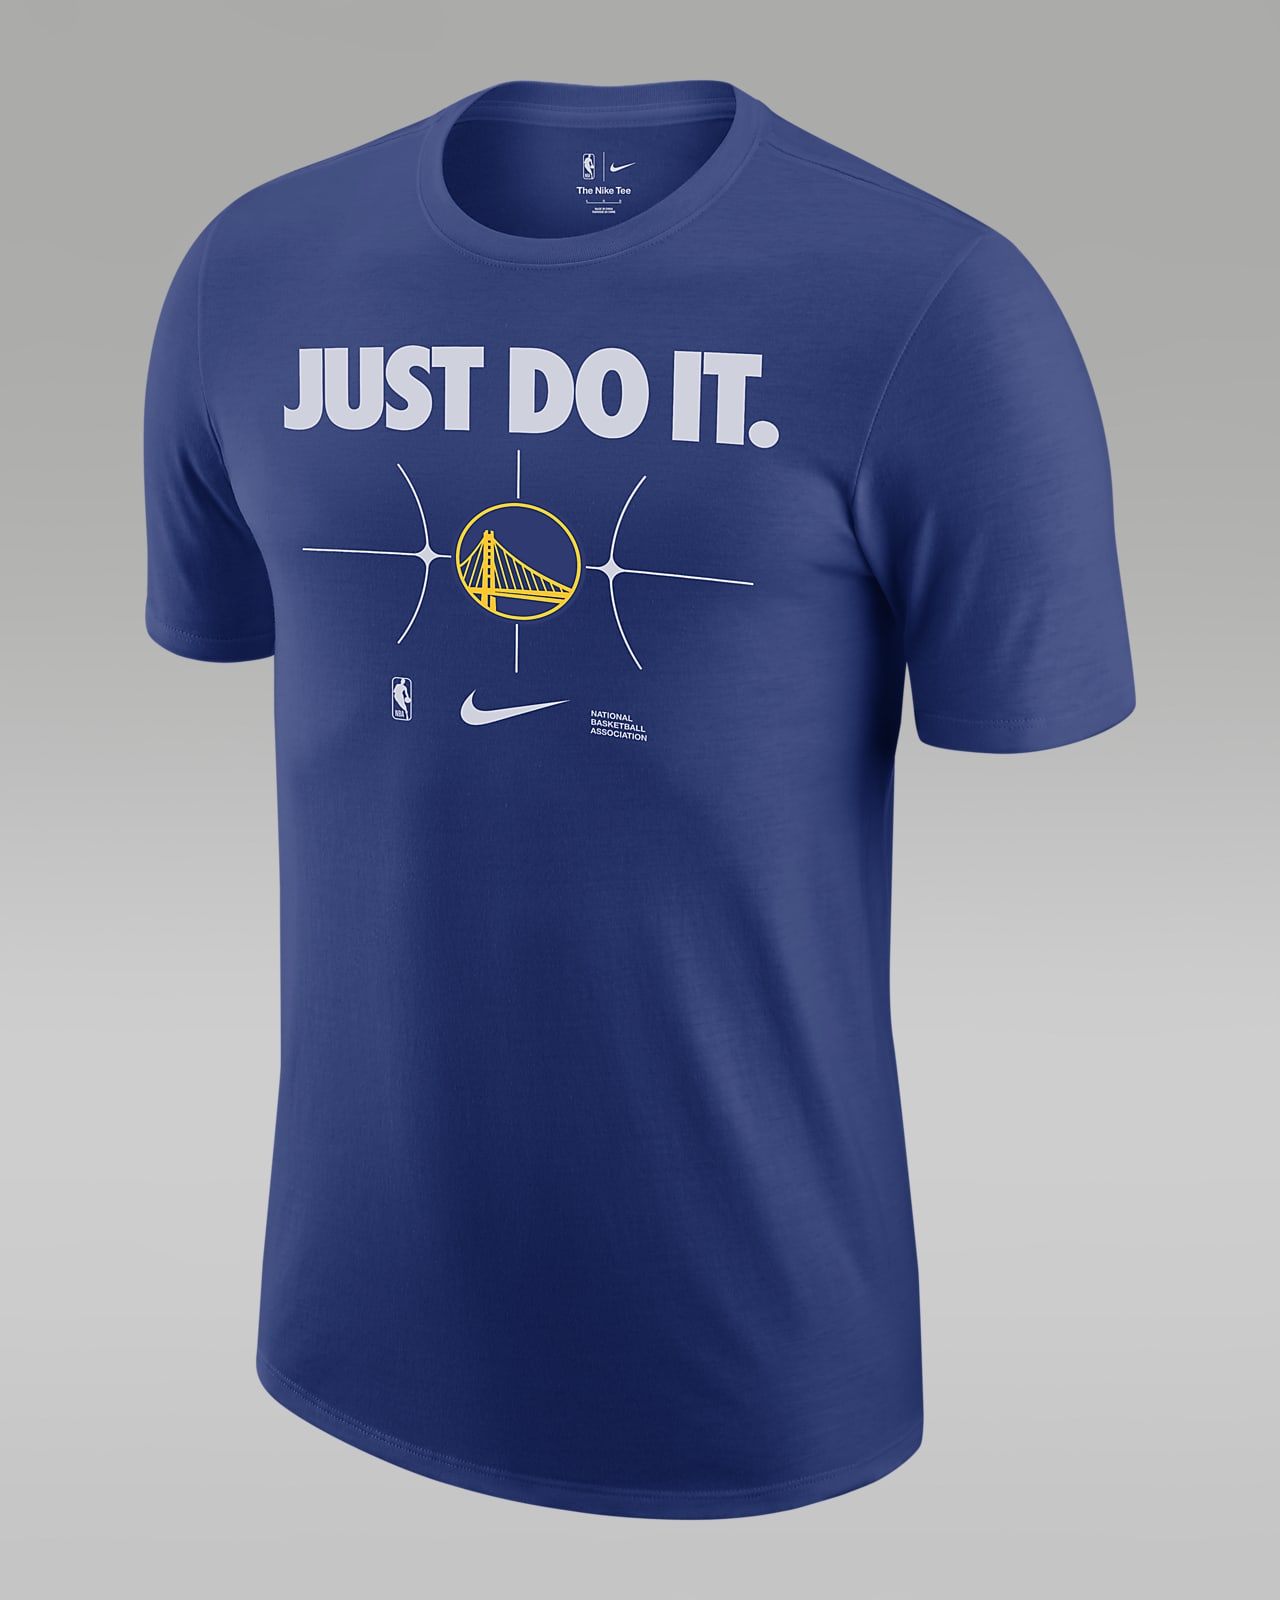 Golden State Warriors Essential Men's Nike NBA T-Shirt